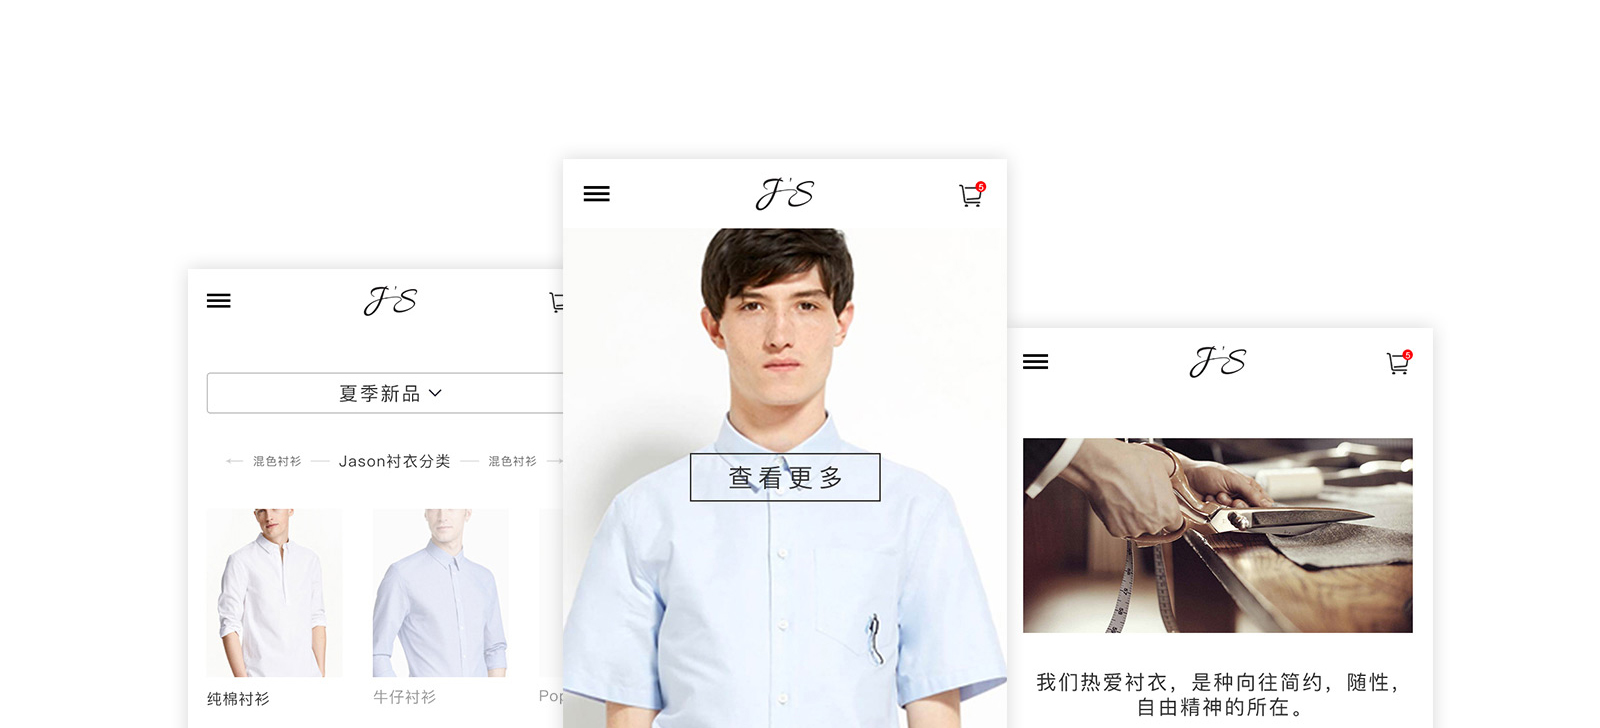 J‘S服装定制品牌网站0-素马设计作品